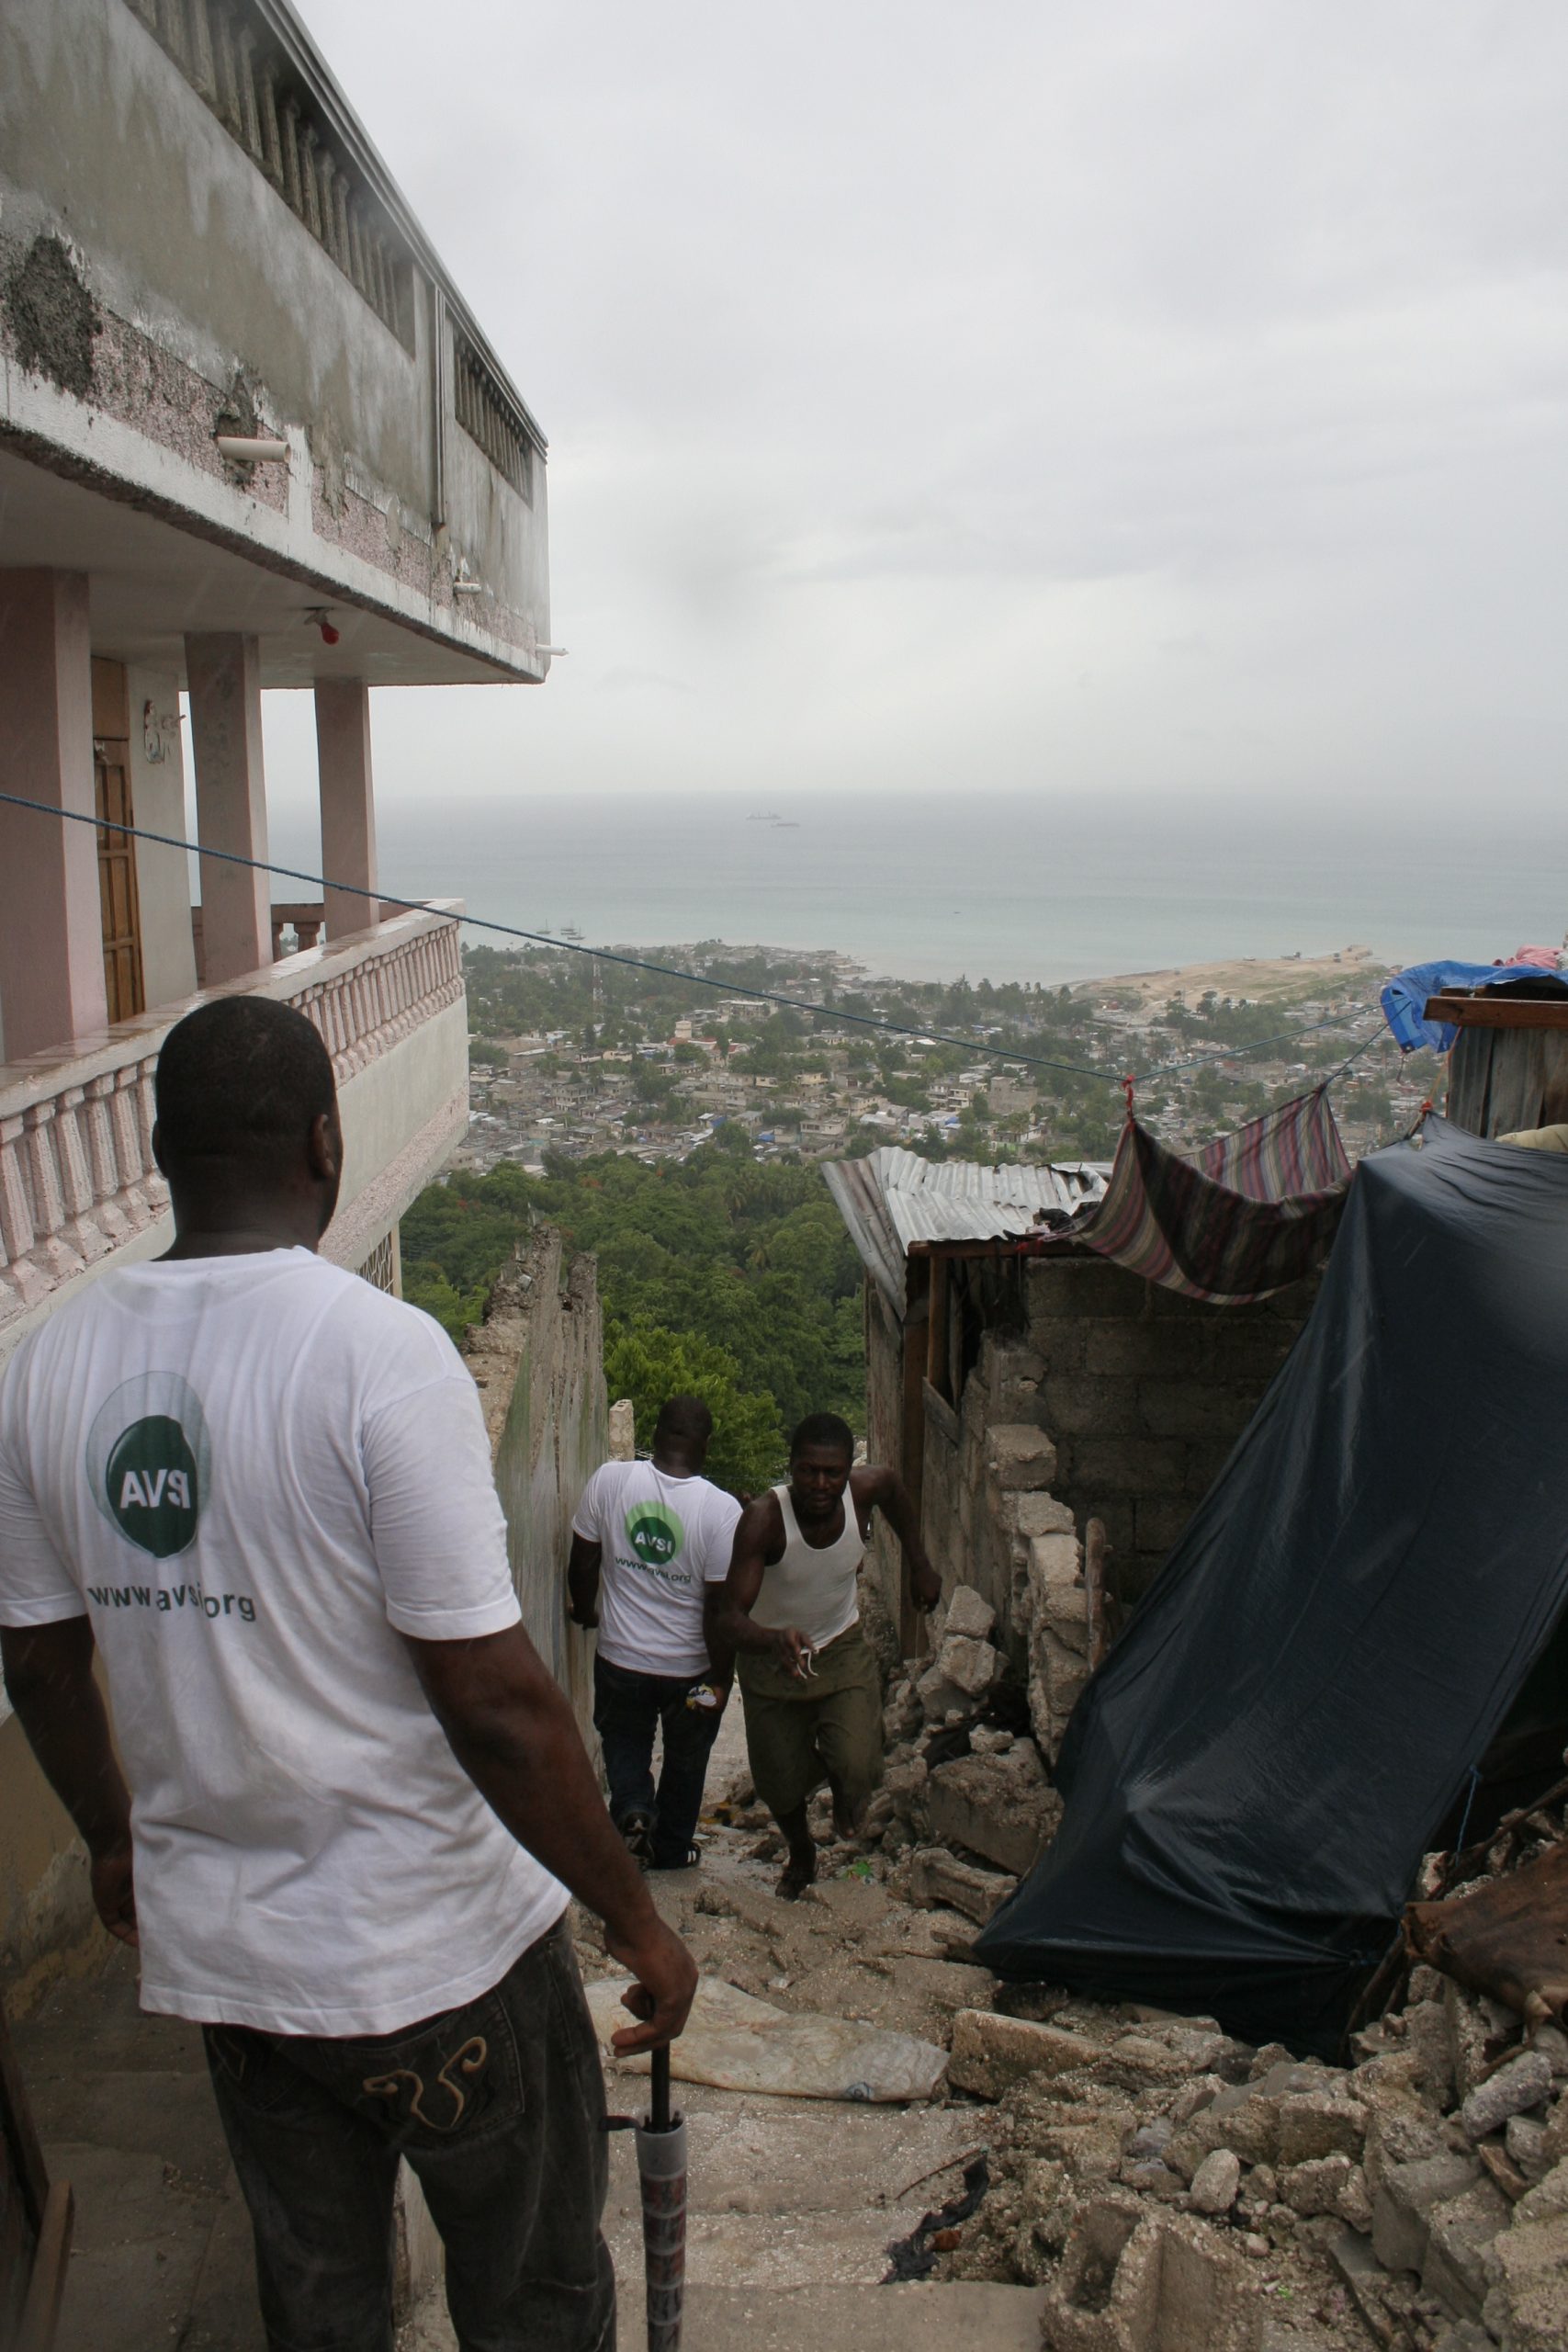 Michela Vianello - archivio che testimonia l'esperienza vissuta ad Haiti come consulenti tecnici in particolare per il rilevamento dello stato delle strutture scolastiche presenti nelle due slam di Port au prince: Martissant e CitÈ soleil. Il periodo in cui si Ë svolta la missione Ë giugno e luglio del 2010 dopo il terremoto.